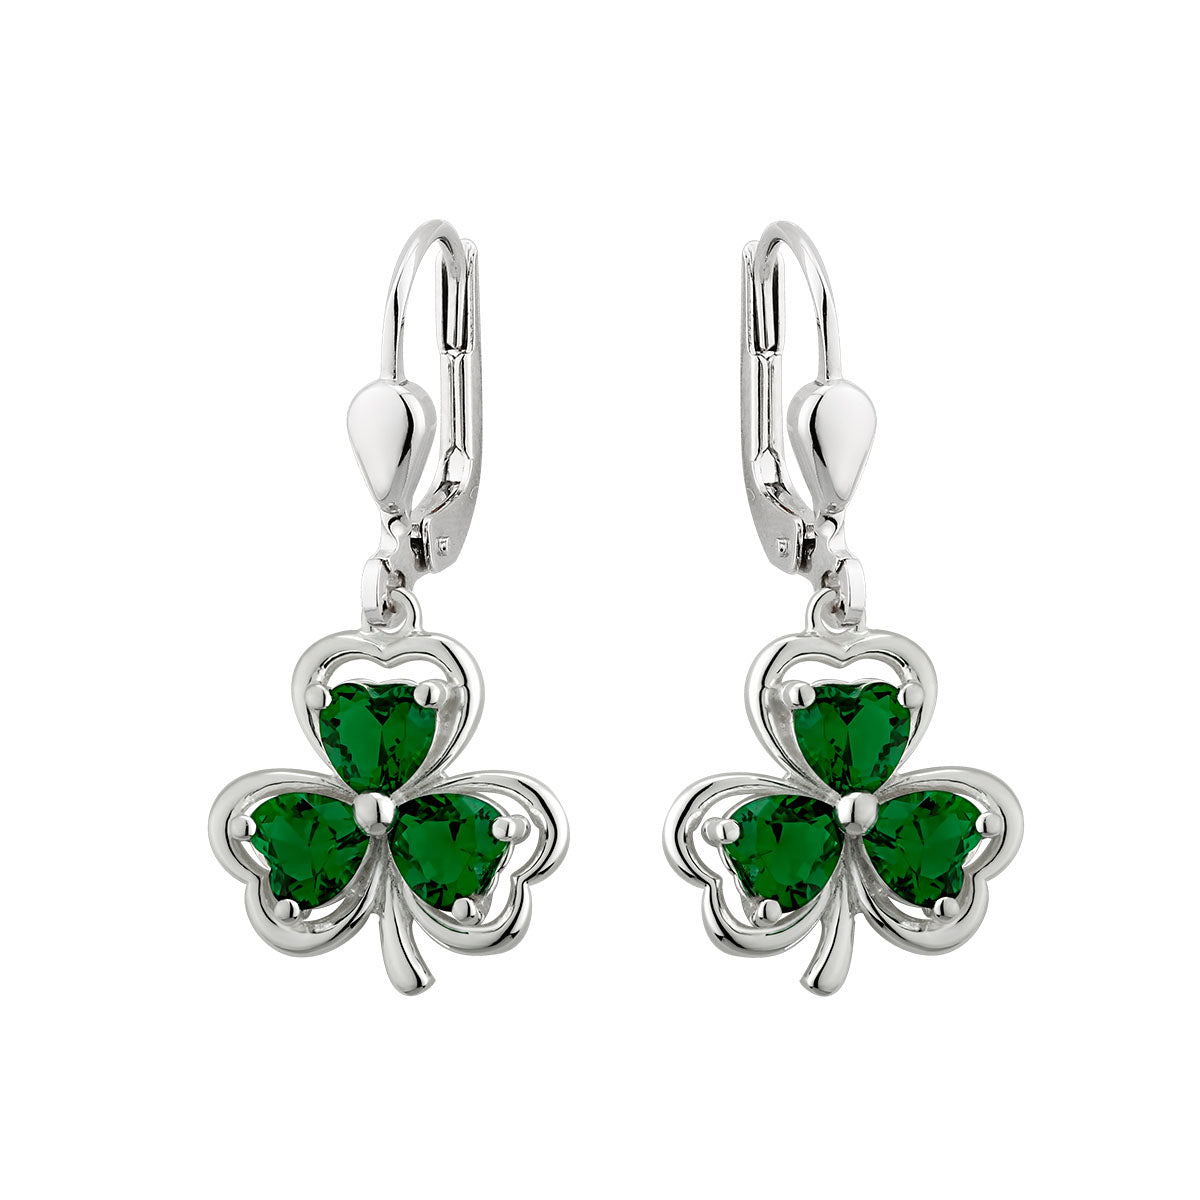 sterling silver green crystal shamrock drop earrings s33914 from Solvar